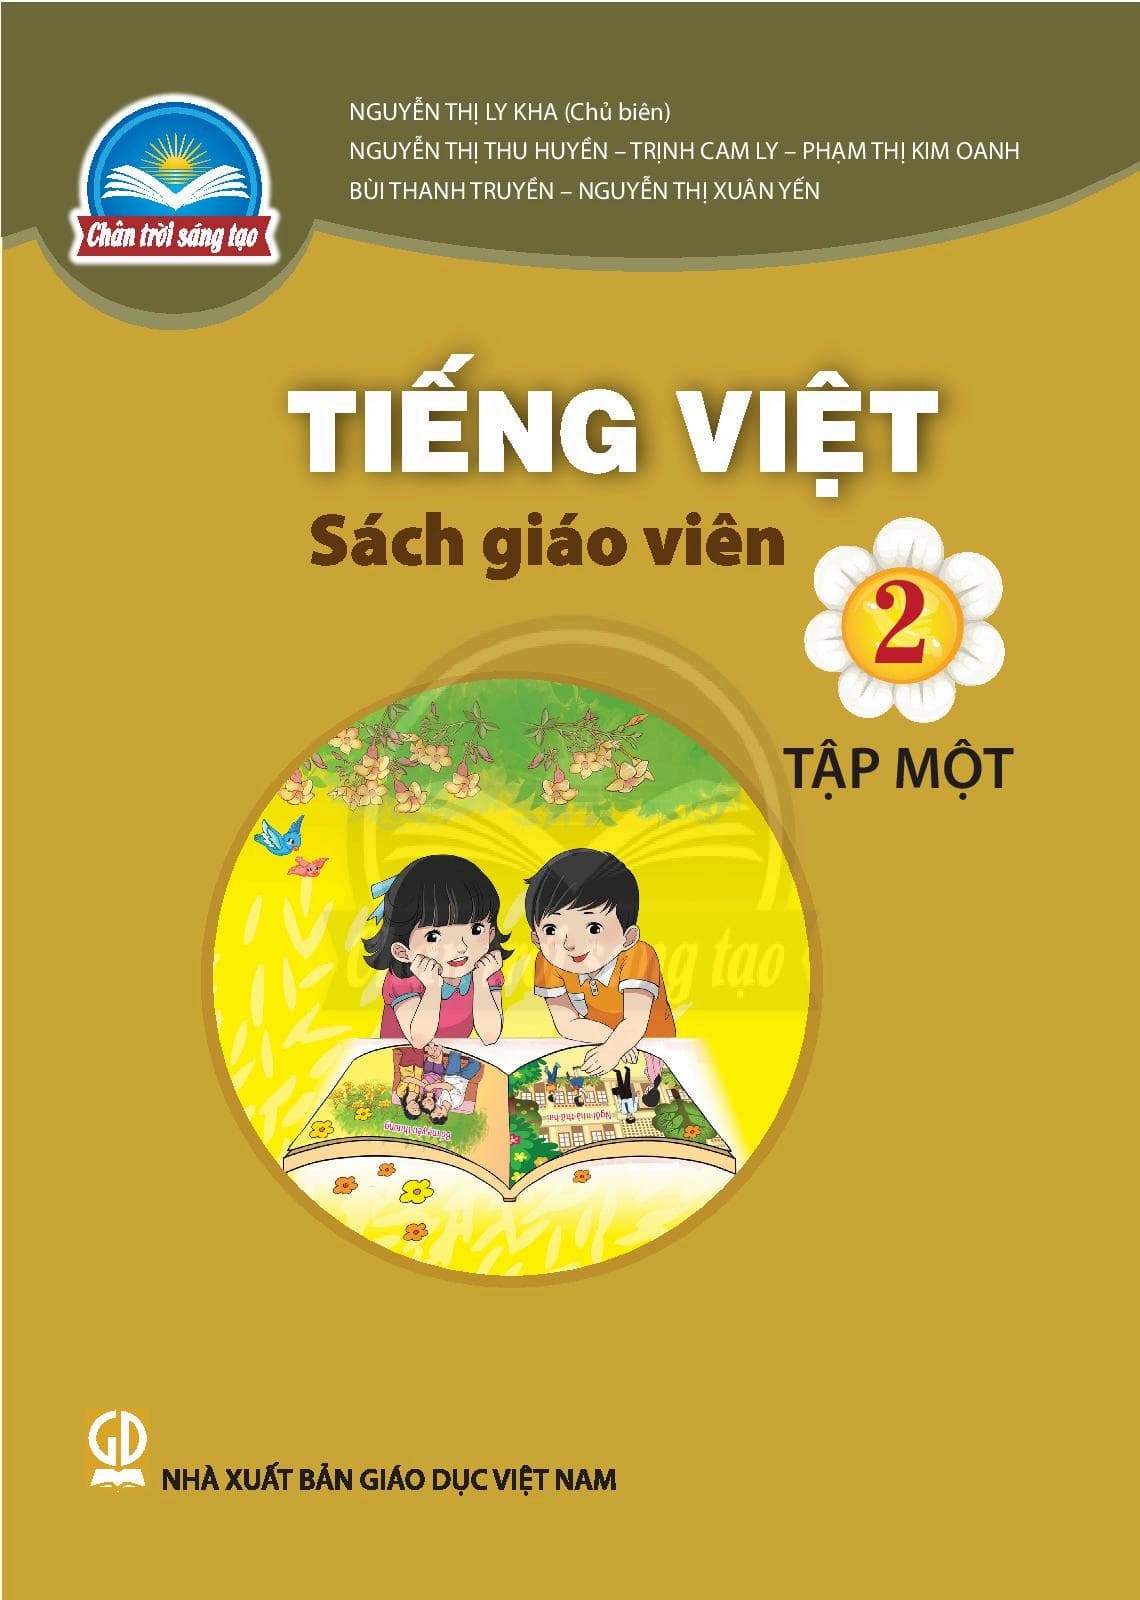 Sách Giáo Viên Tiếng Việt 2 Tập 1 - Chân Trời Sáng Tạo